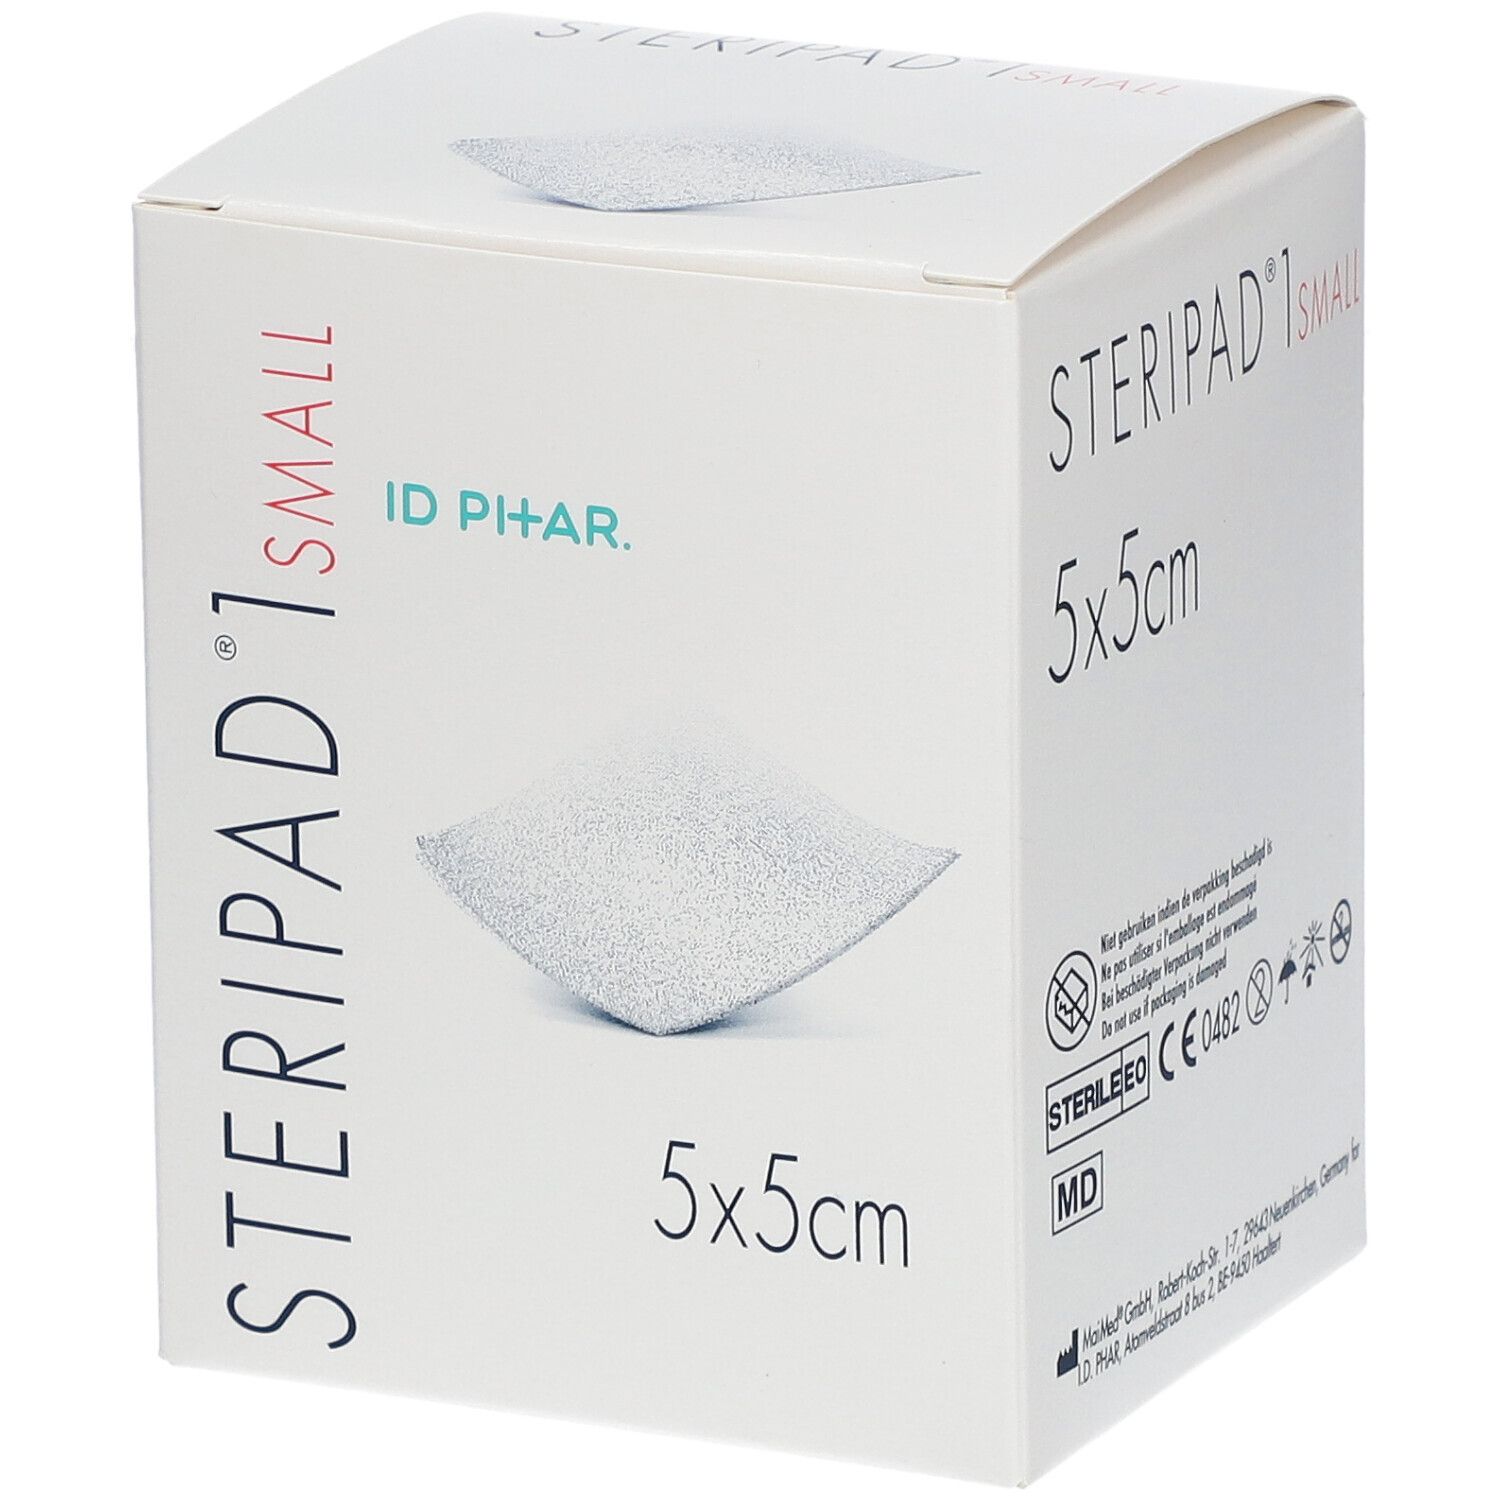 STERIPAD 1 SMALL 5 X 5 CM COMPRESSES STERILES (40) : Compresses stériles